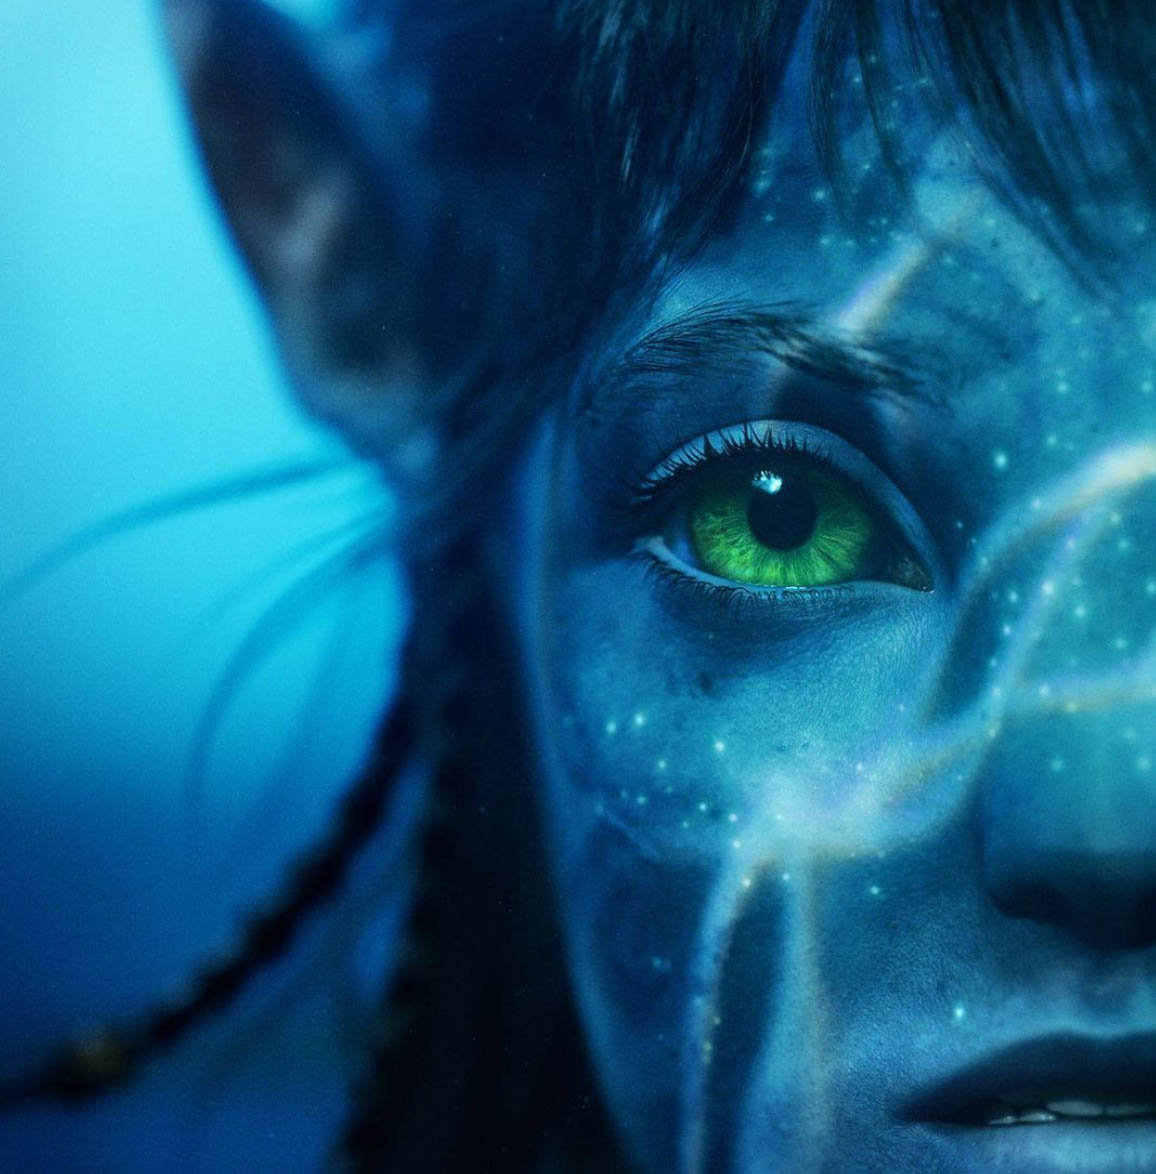 Avatar The Way of Water Zoe Saldana Neytiri avatar 2 norge